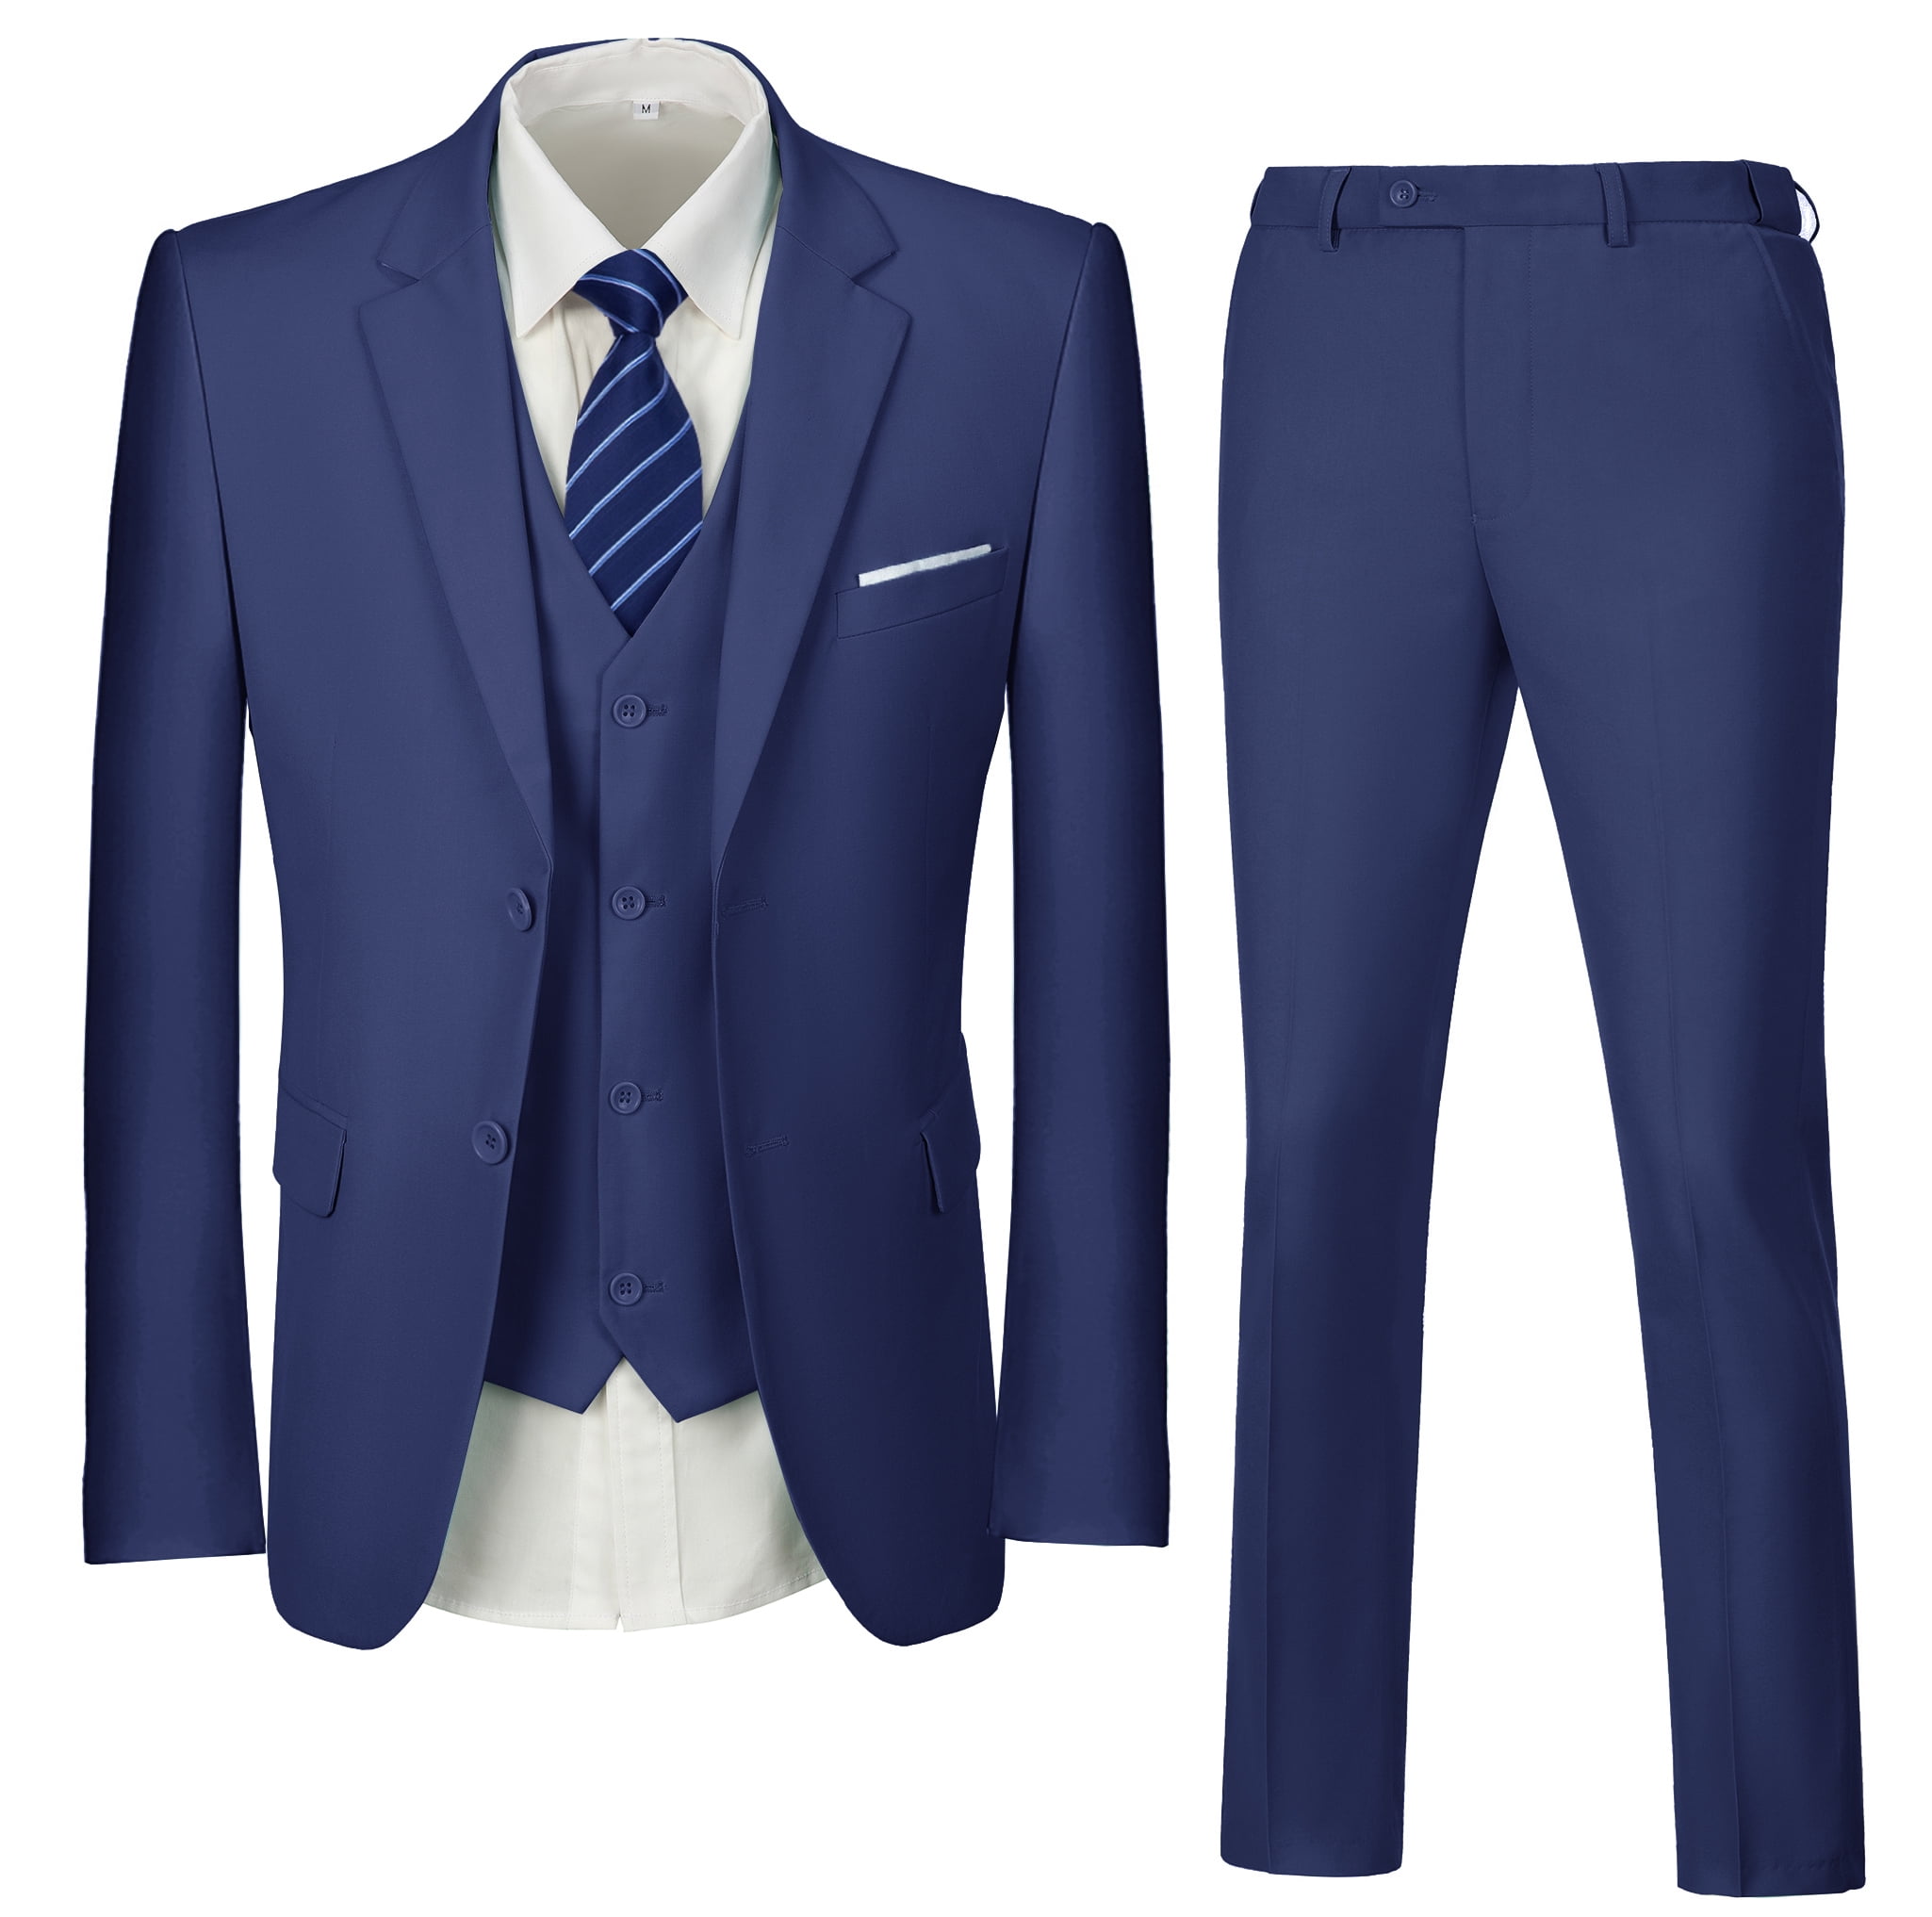 Details more than 301 blazer 3 piece suit